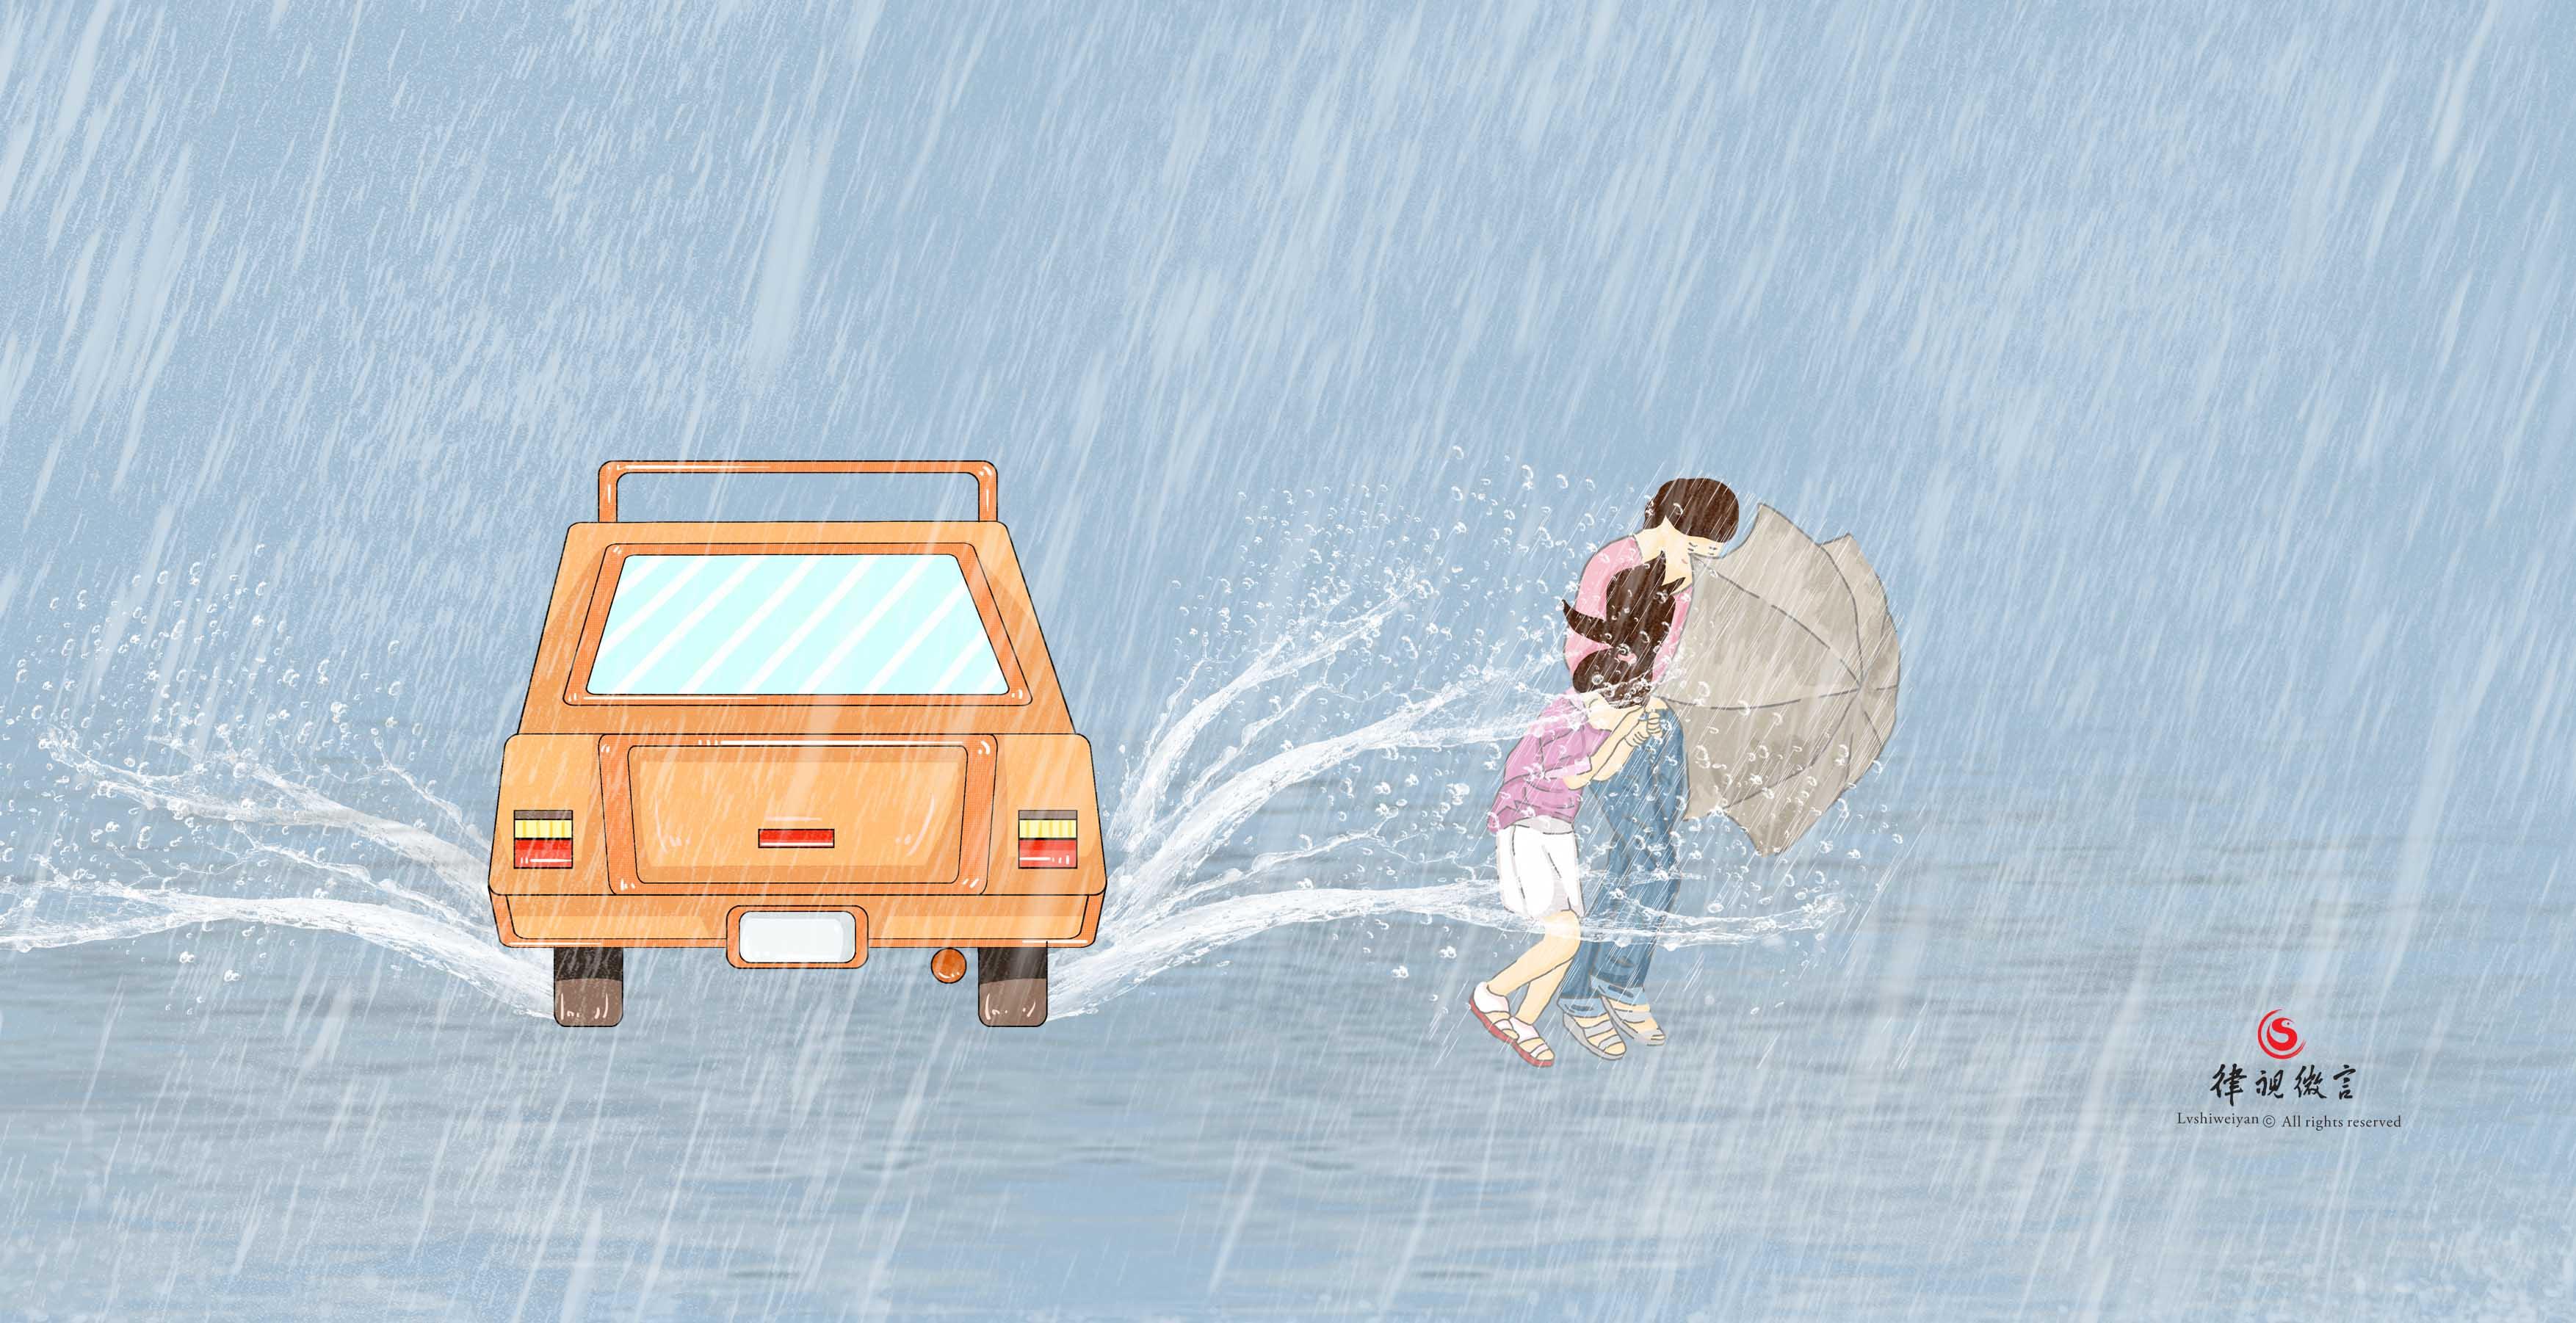 Gratis Afbeeldingen : regen, venster, regendruppel, bus, kunst, regenen ...